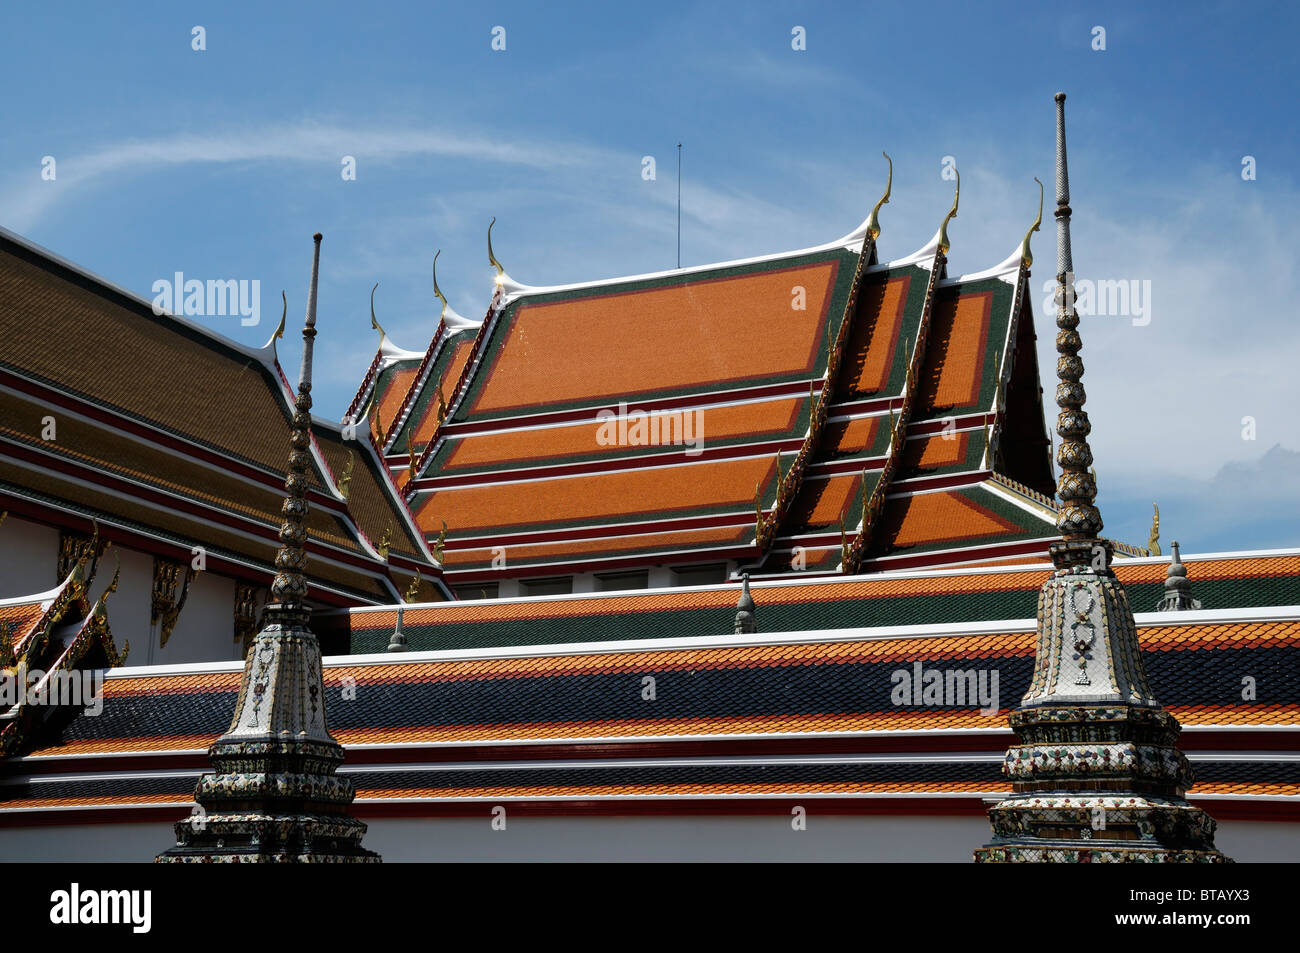 Wat Pho tempio del Buddha reclinato Wat Phra Chetuphon bangkok thailandia arancione tegola di tetto dettaglio Foto Stock